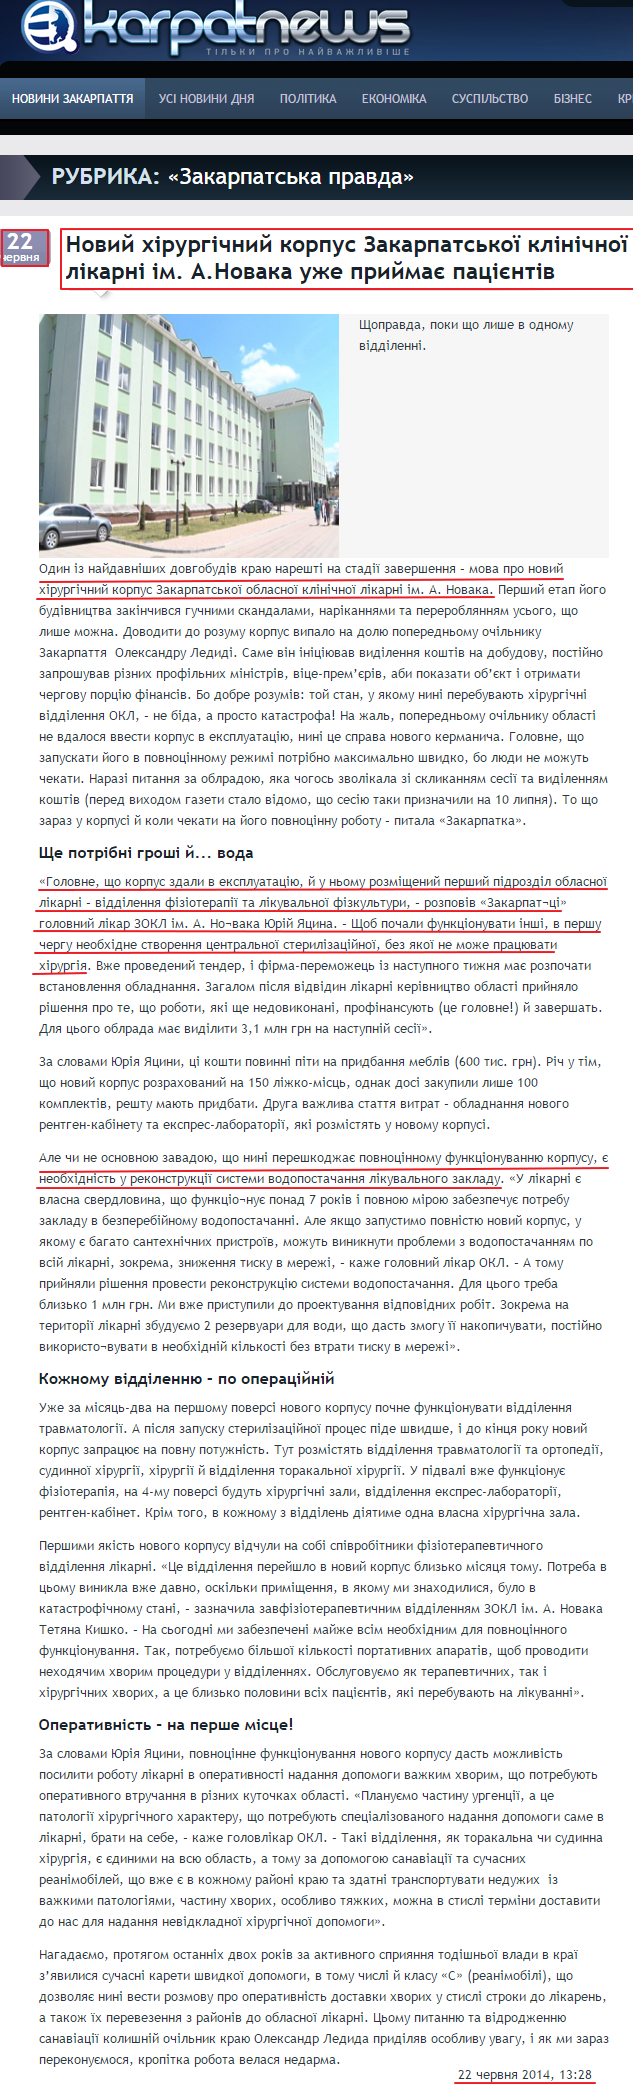 http://karpatnews.in.ua/news/84081-novyi-khirurhichnyi-korpus-zakarpatskoi-klinichnoi-likarni-im-a-novaka-uzhe-pryimaie-patsiientiv.htm